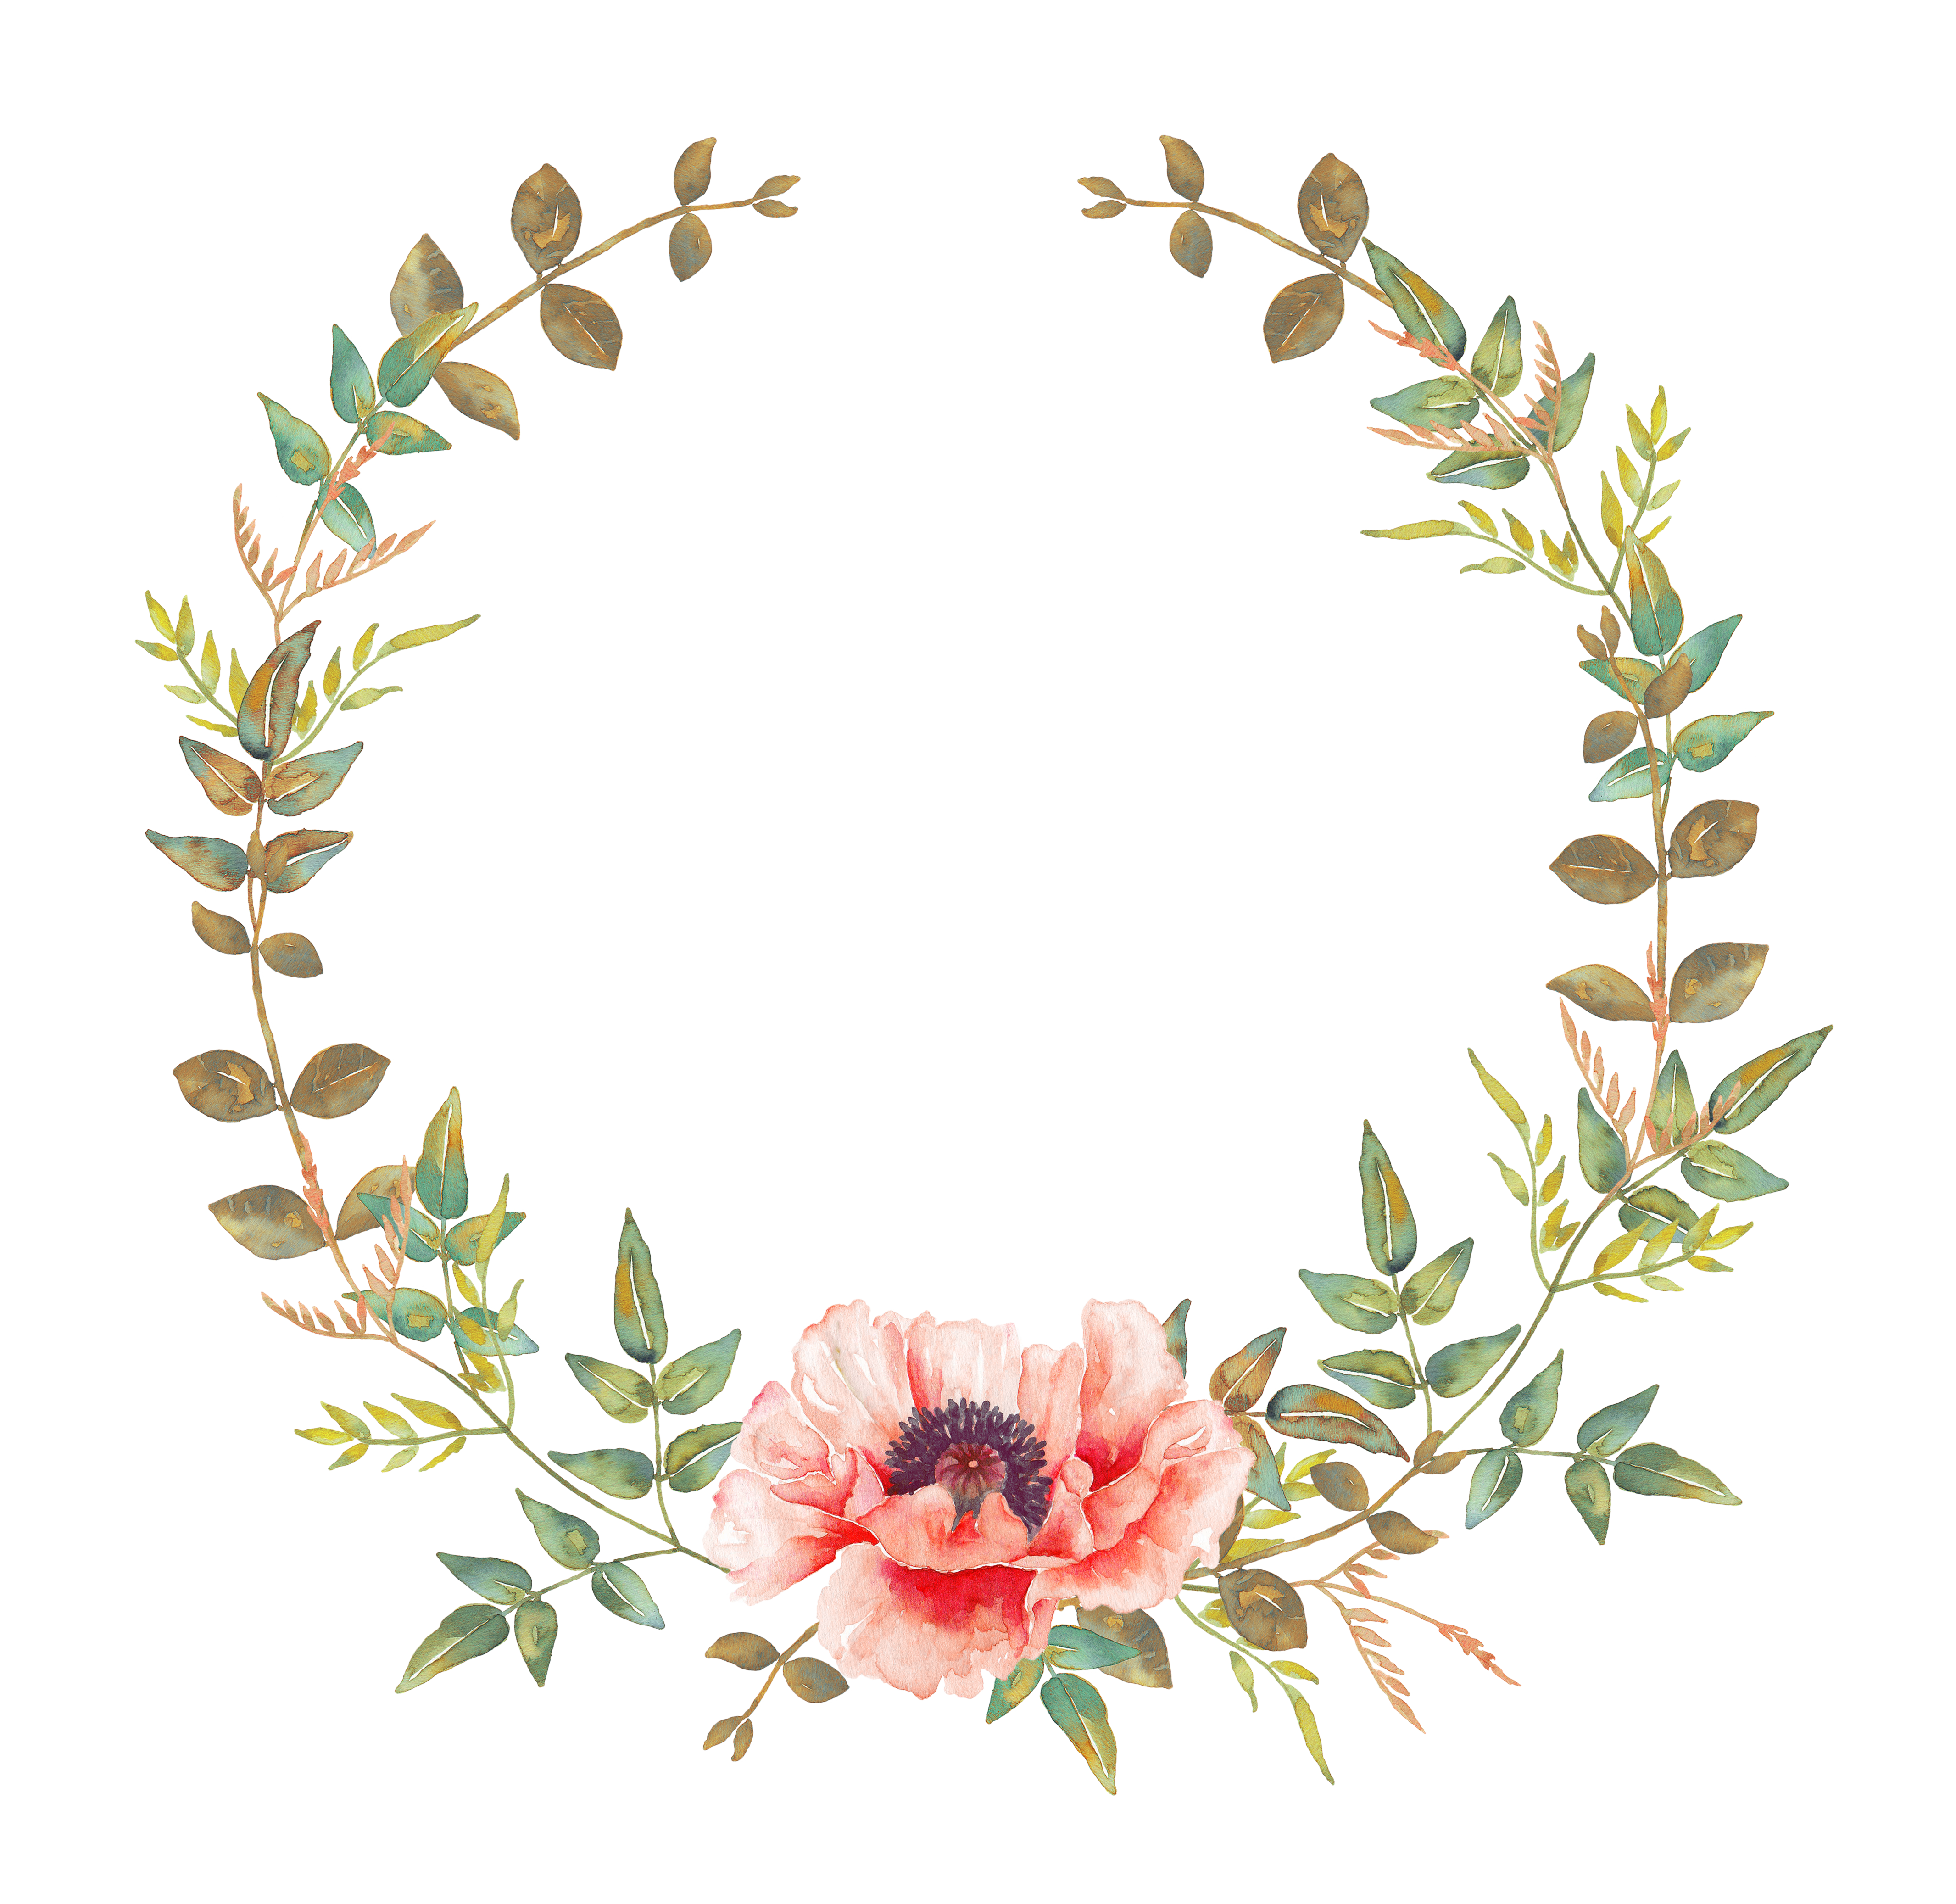 الحمدلله الذي بنعمته تتم الصالحات. Wreath watercolor, Floral watercolor, Flower background